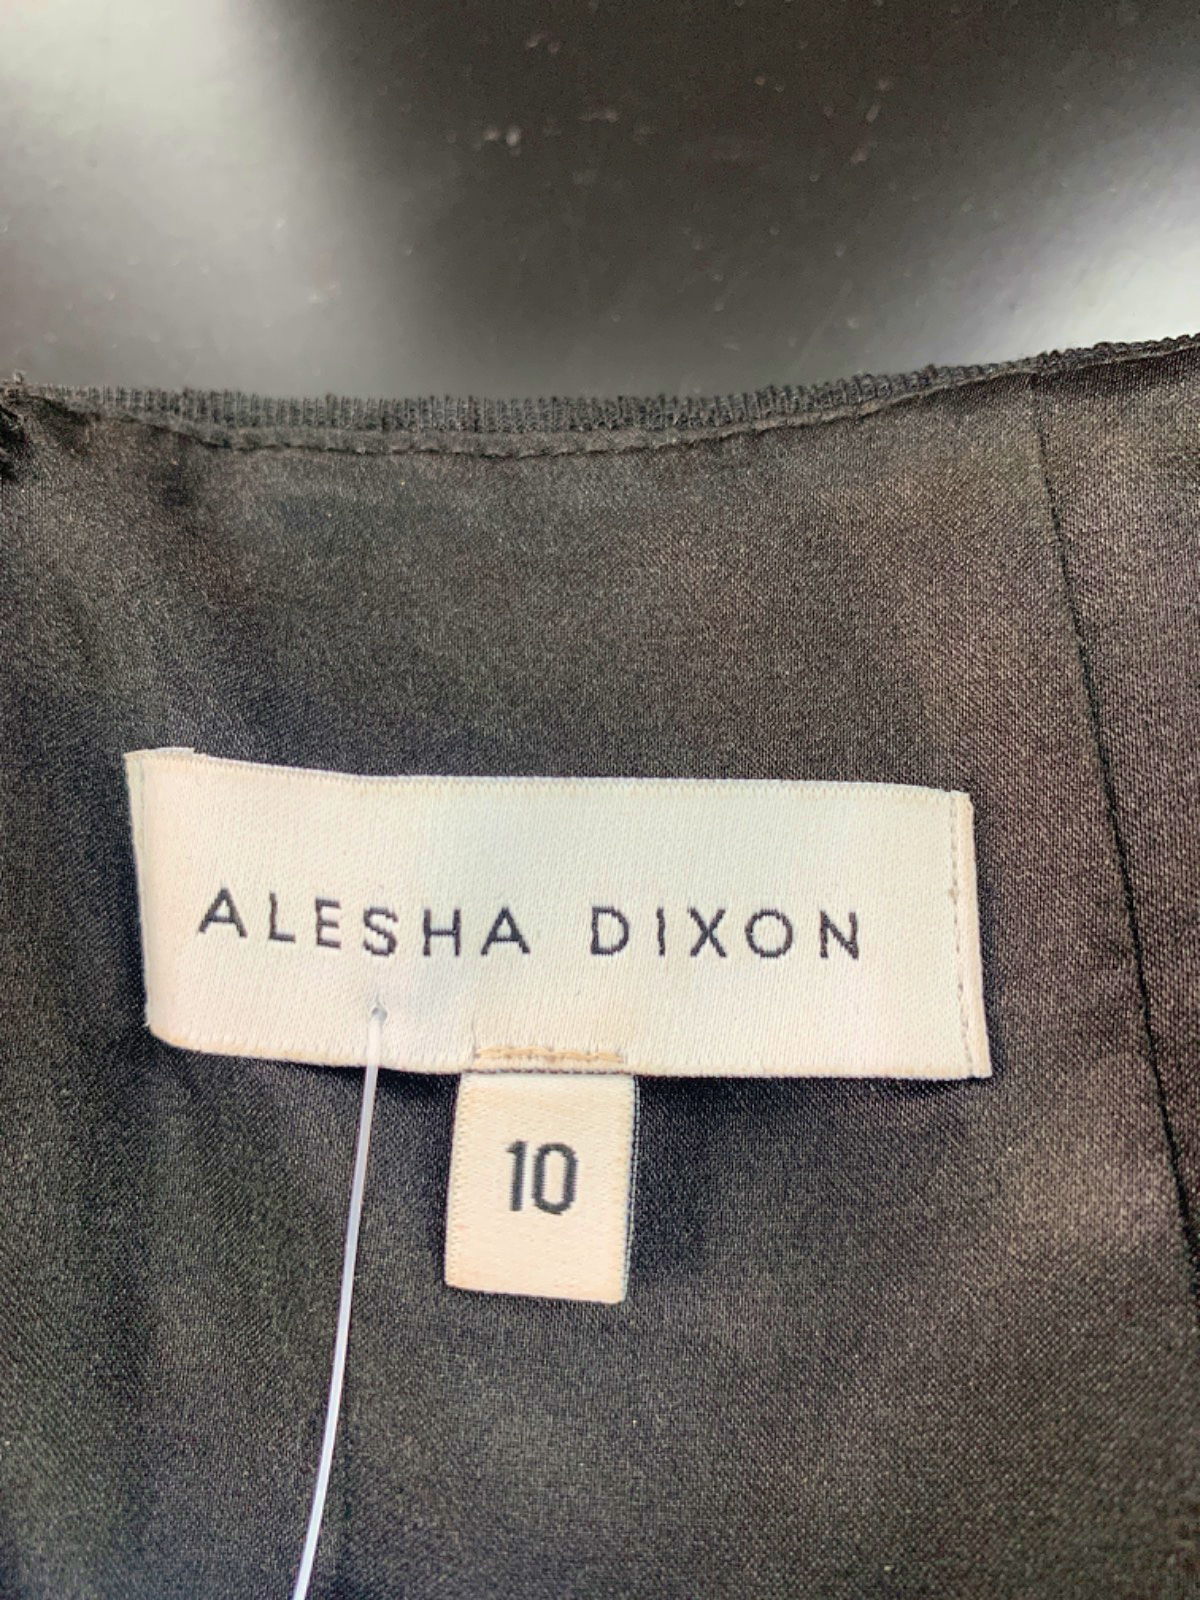 Alesha Dixon Black Off-Shoulder Midi Dress UK 10